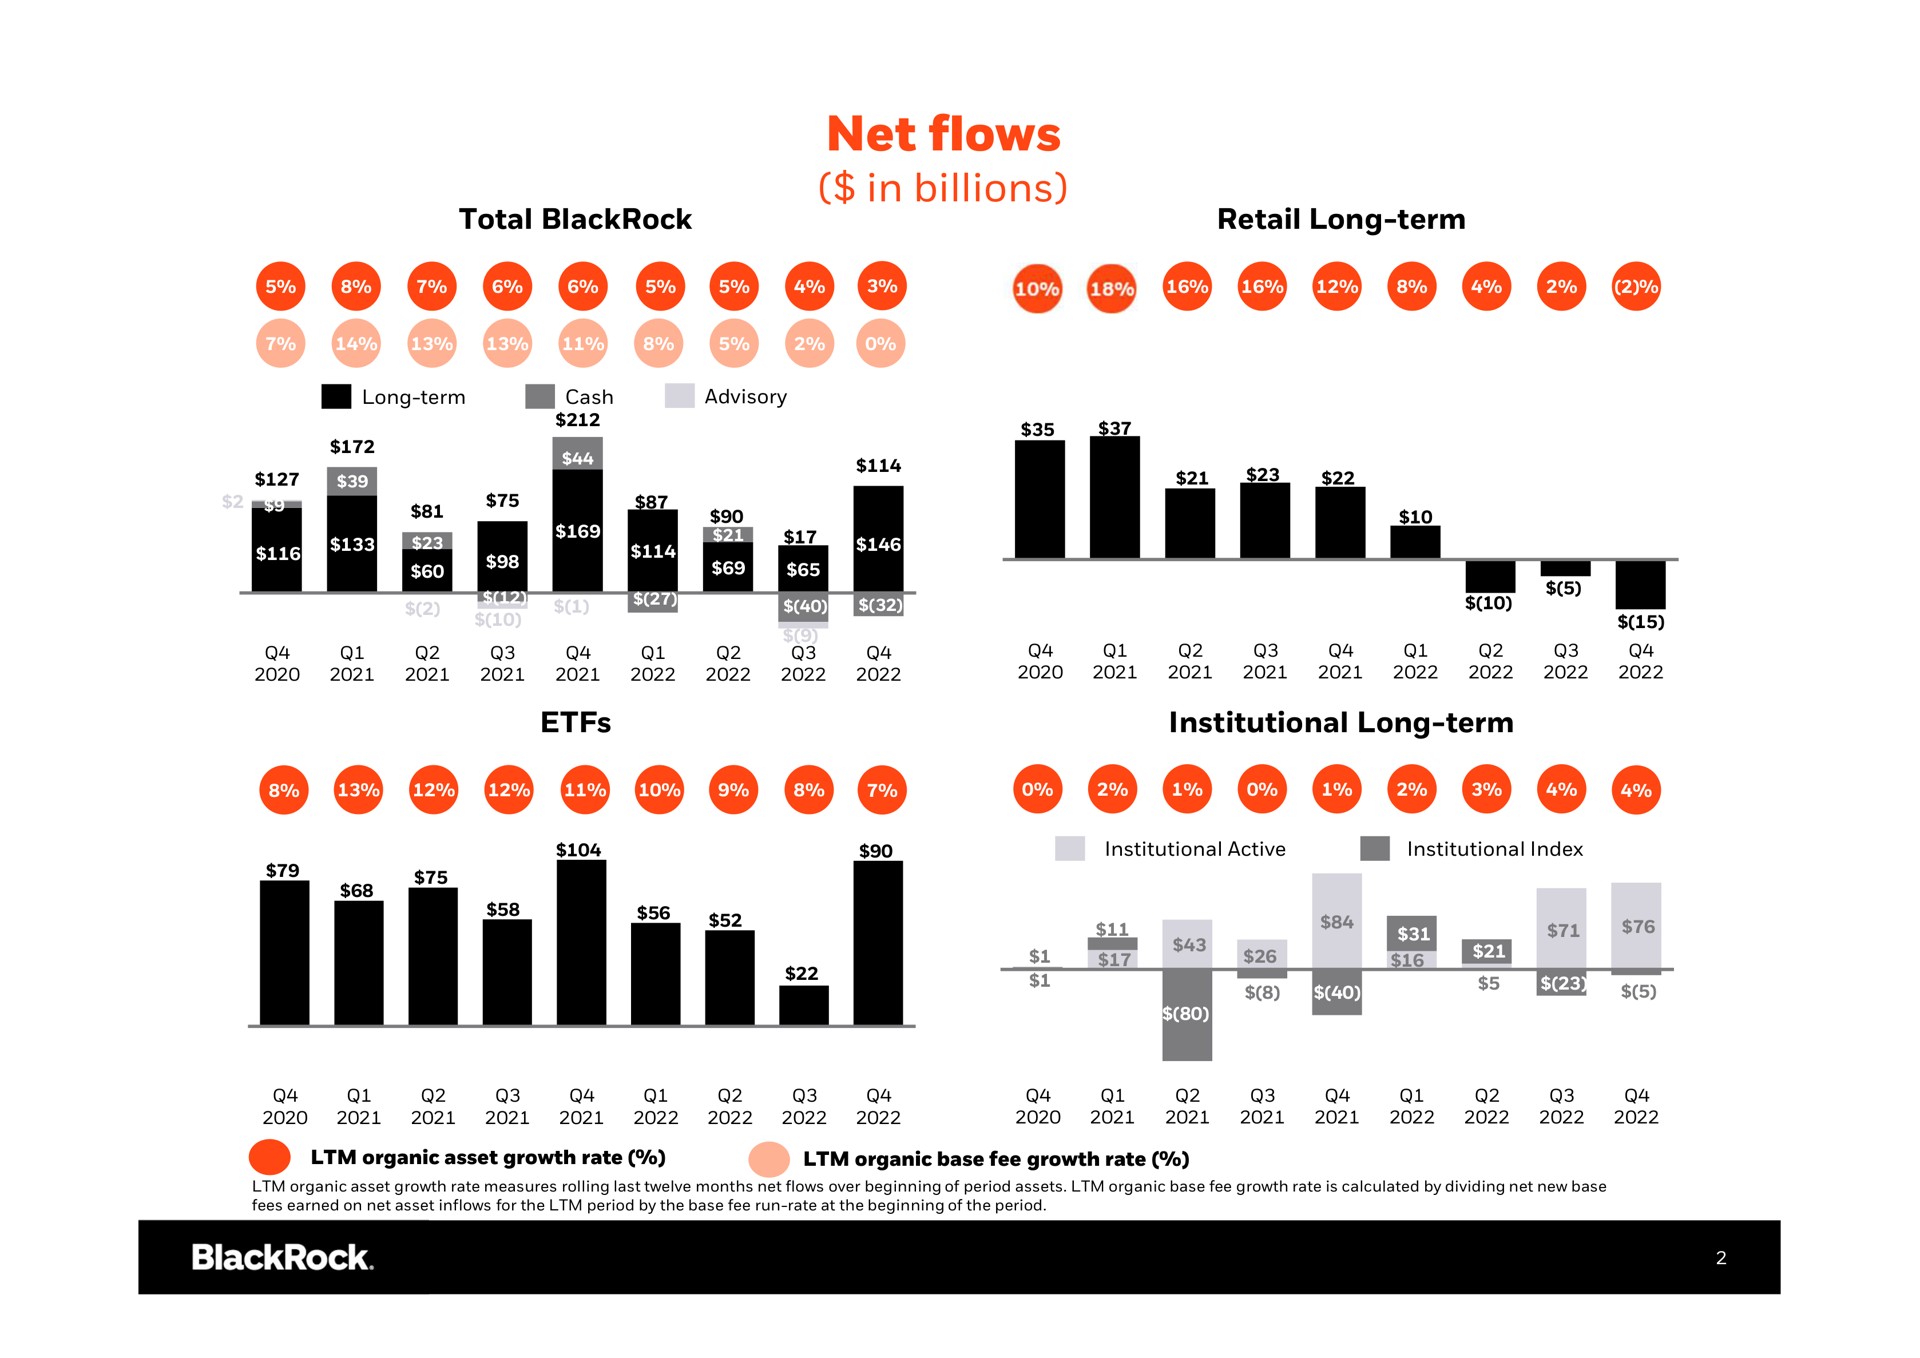 net flows in billions | BlackRock